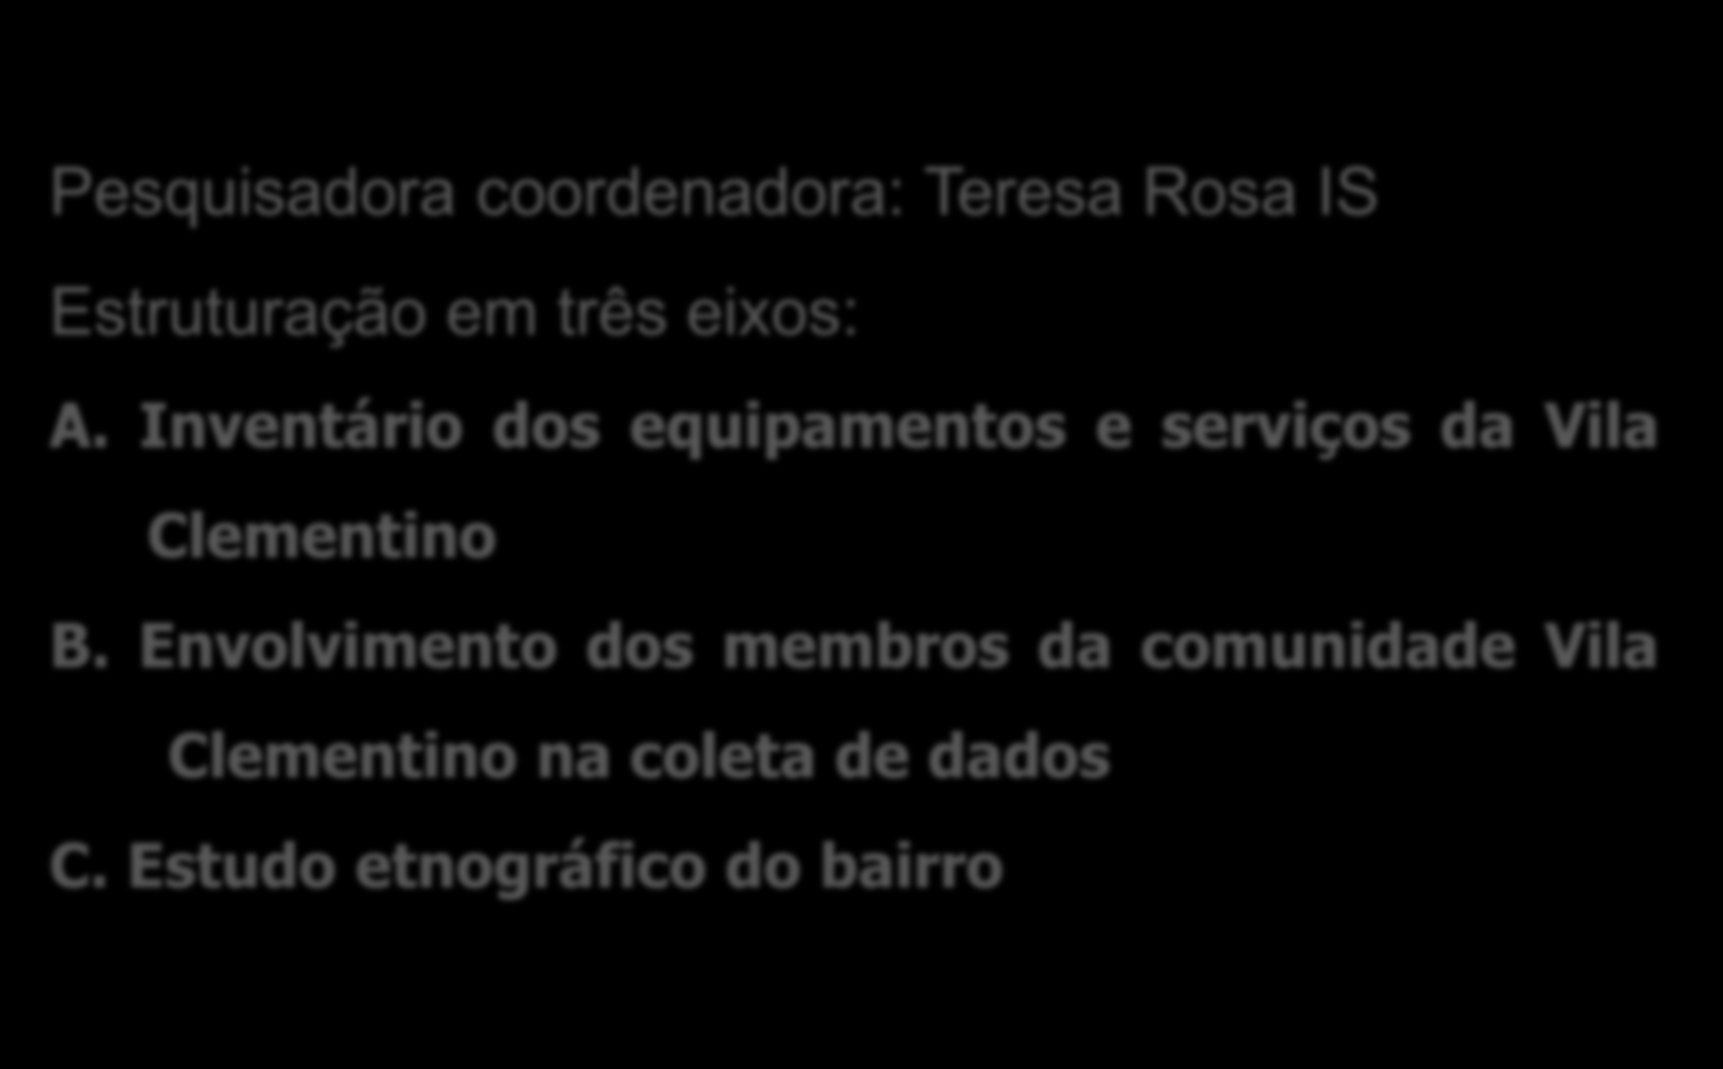 Barrio amigable Vila clementino Metodologia Pesquisadora coordenadora: Teresa Rosa IS Estruturação em três eixos: A.